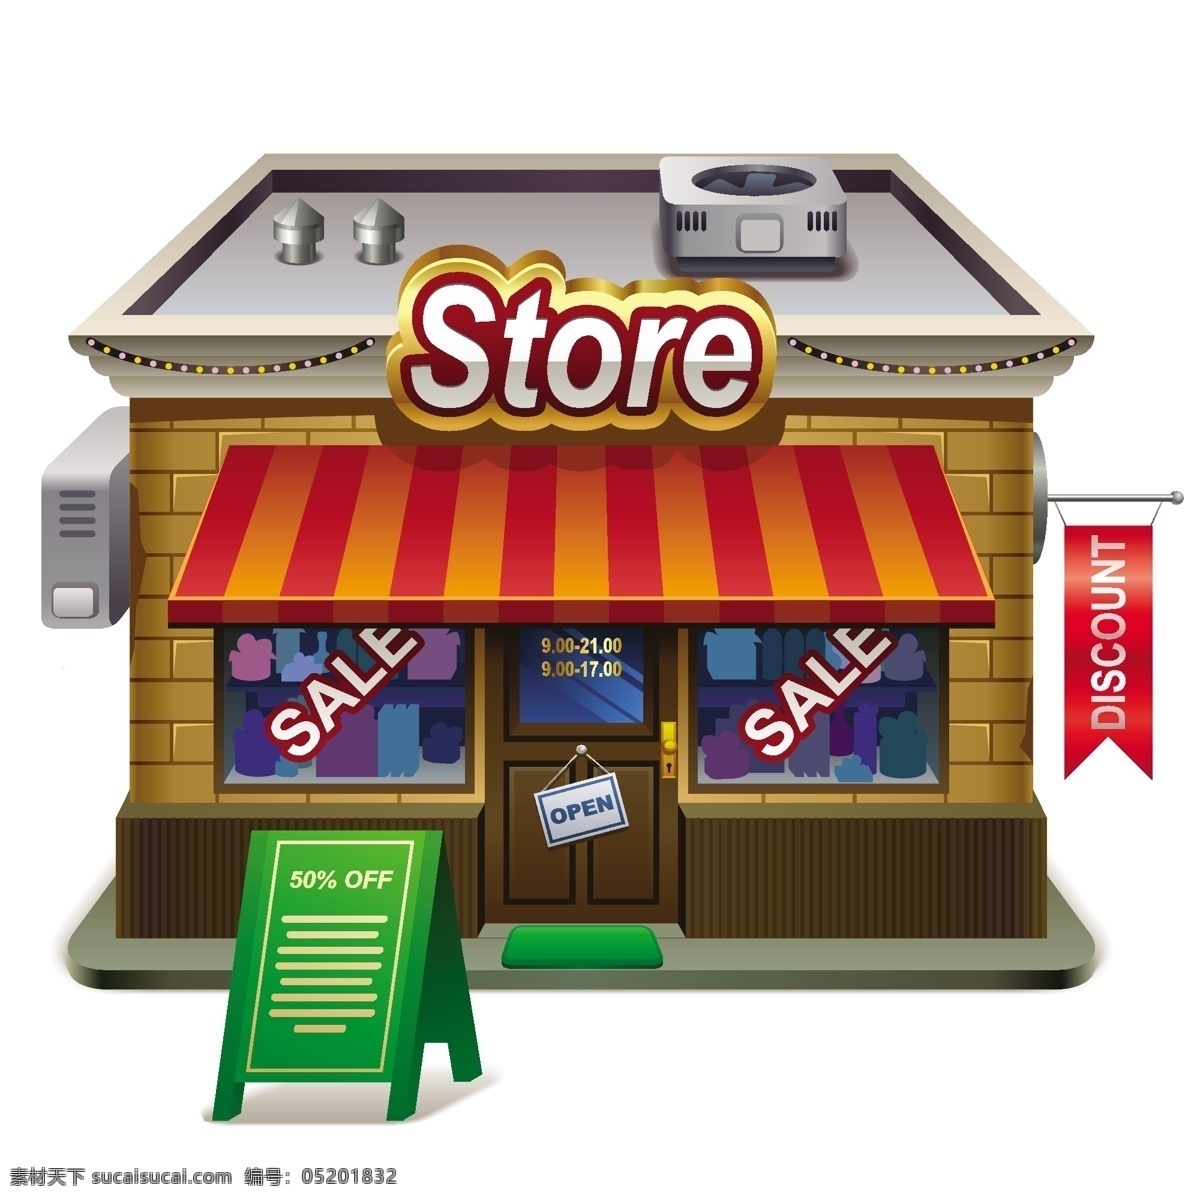 小 商店 矢量 模型 小商店 商店的模型 向量 模式 小商店的模型 杂货店 小商店向量 房子 向量店 向量的商店 矢量图 其他矢量图